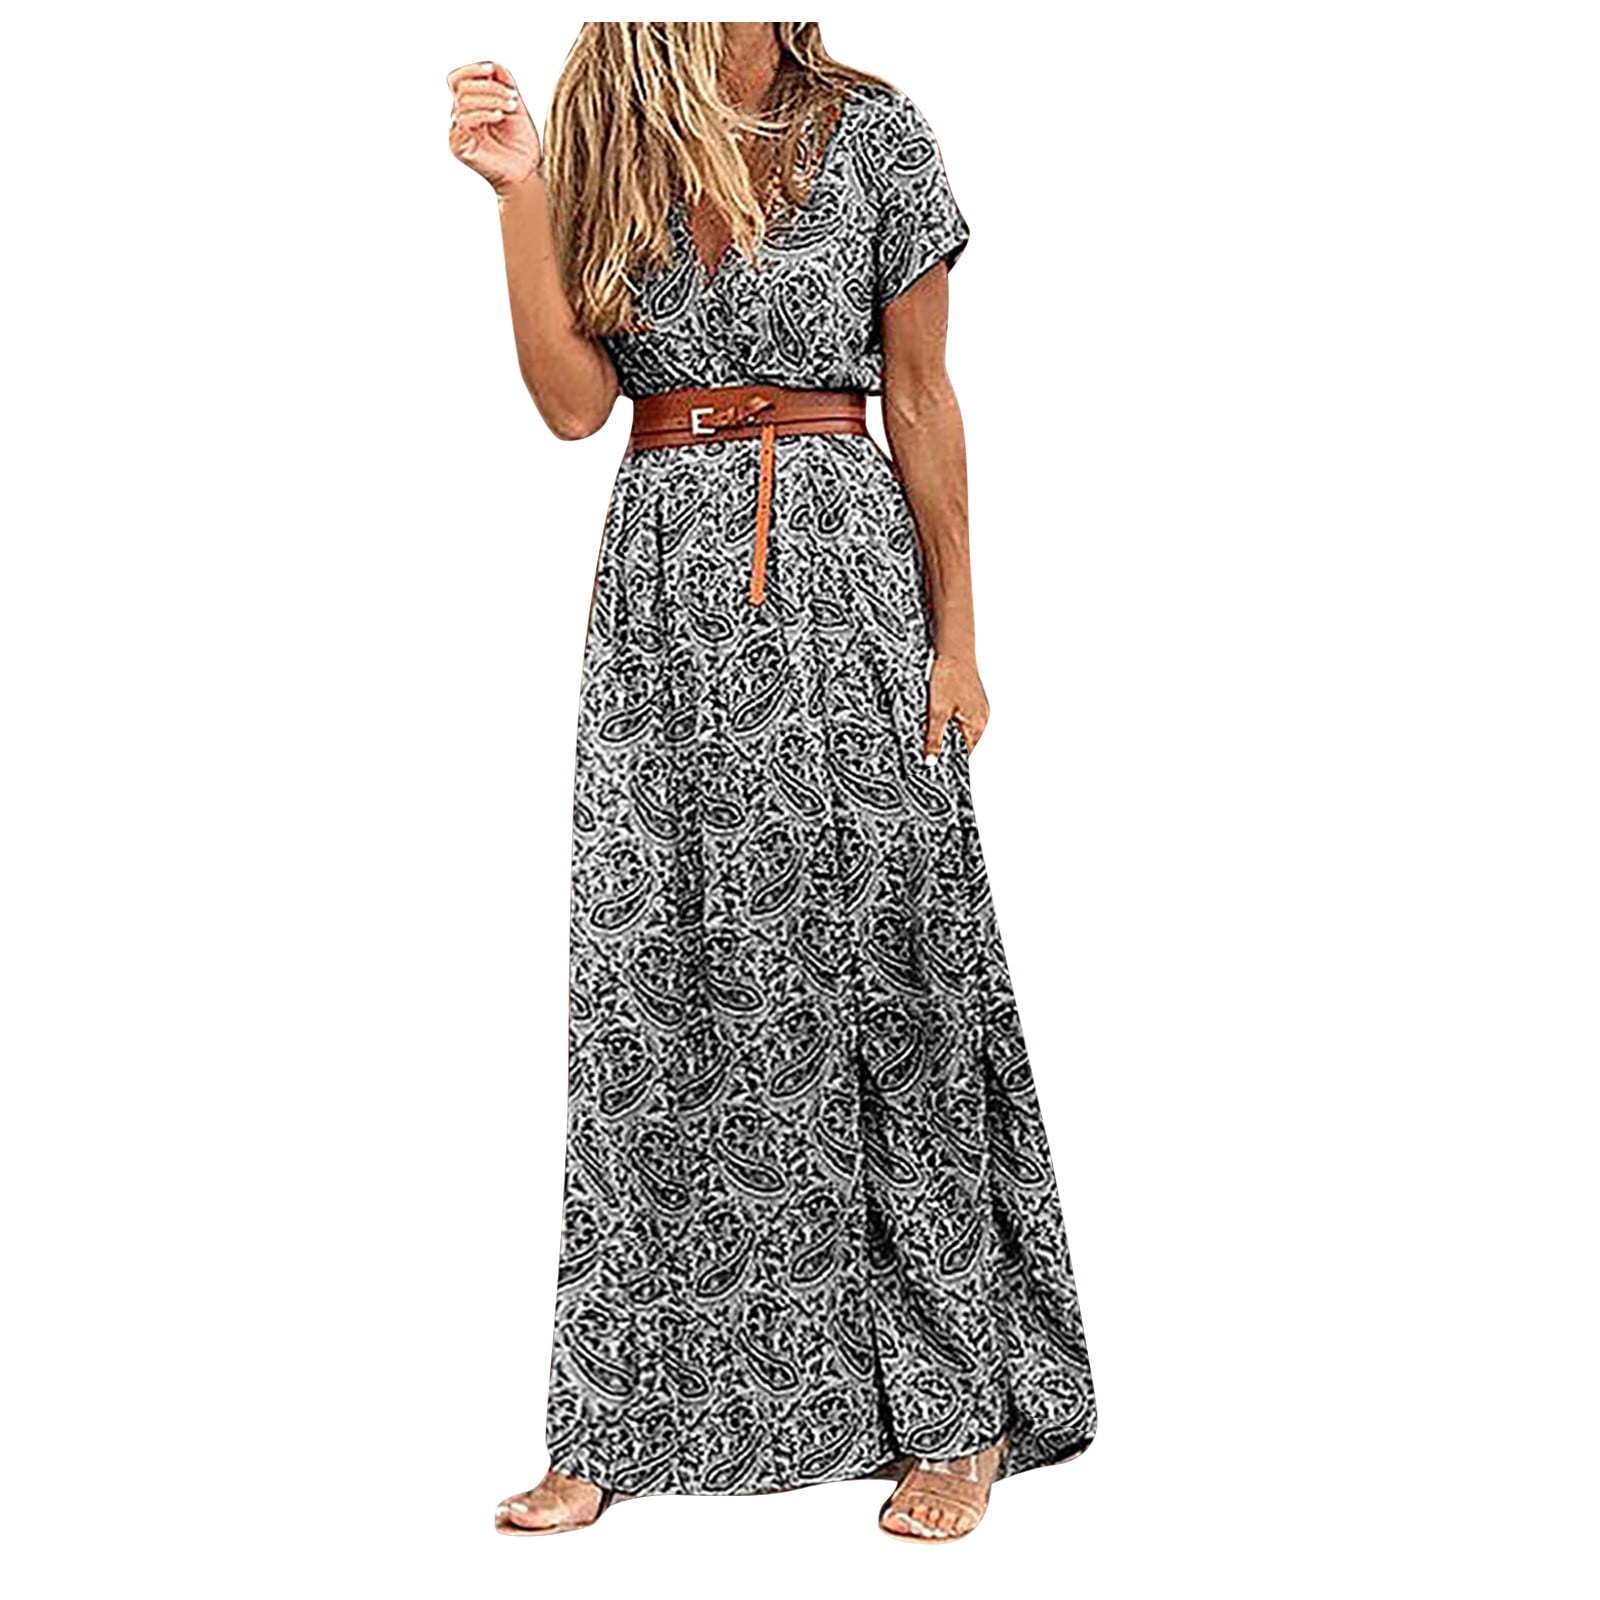 Women's Dress Style Printed Waist V Neck Dress Skirt Bohemian Long ...